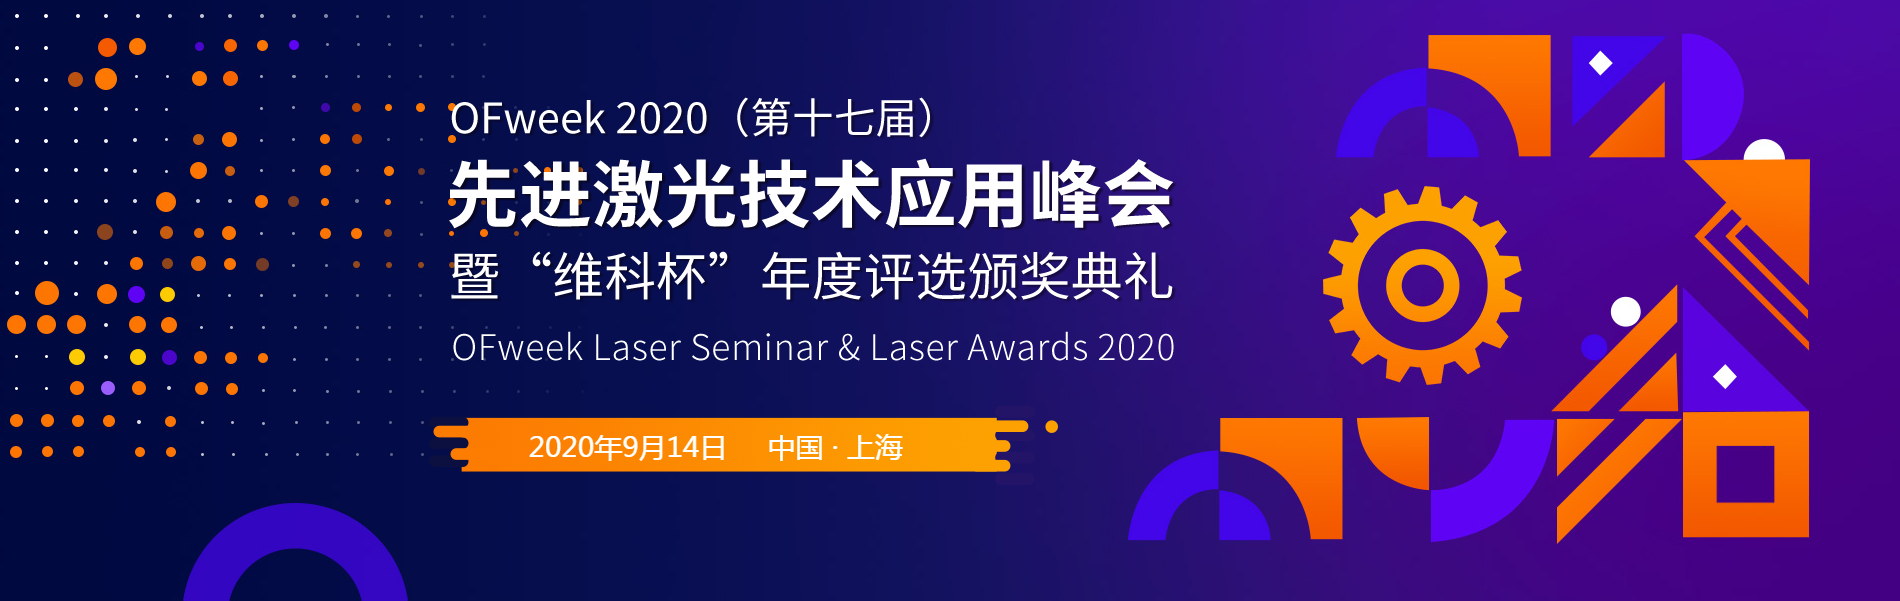 OFweek2020（第十七届）先进激光技术应用峰会暨“维科杯”年度评选颁奖典礼